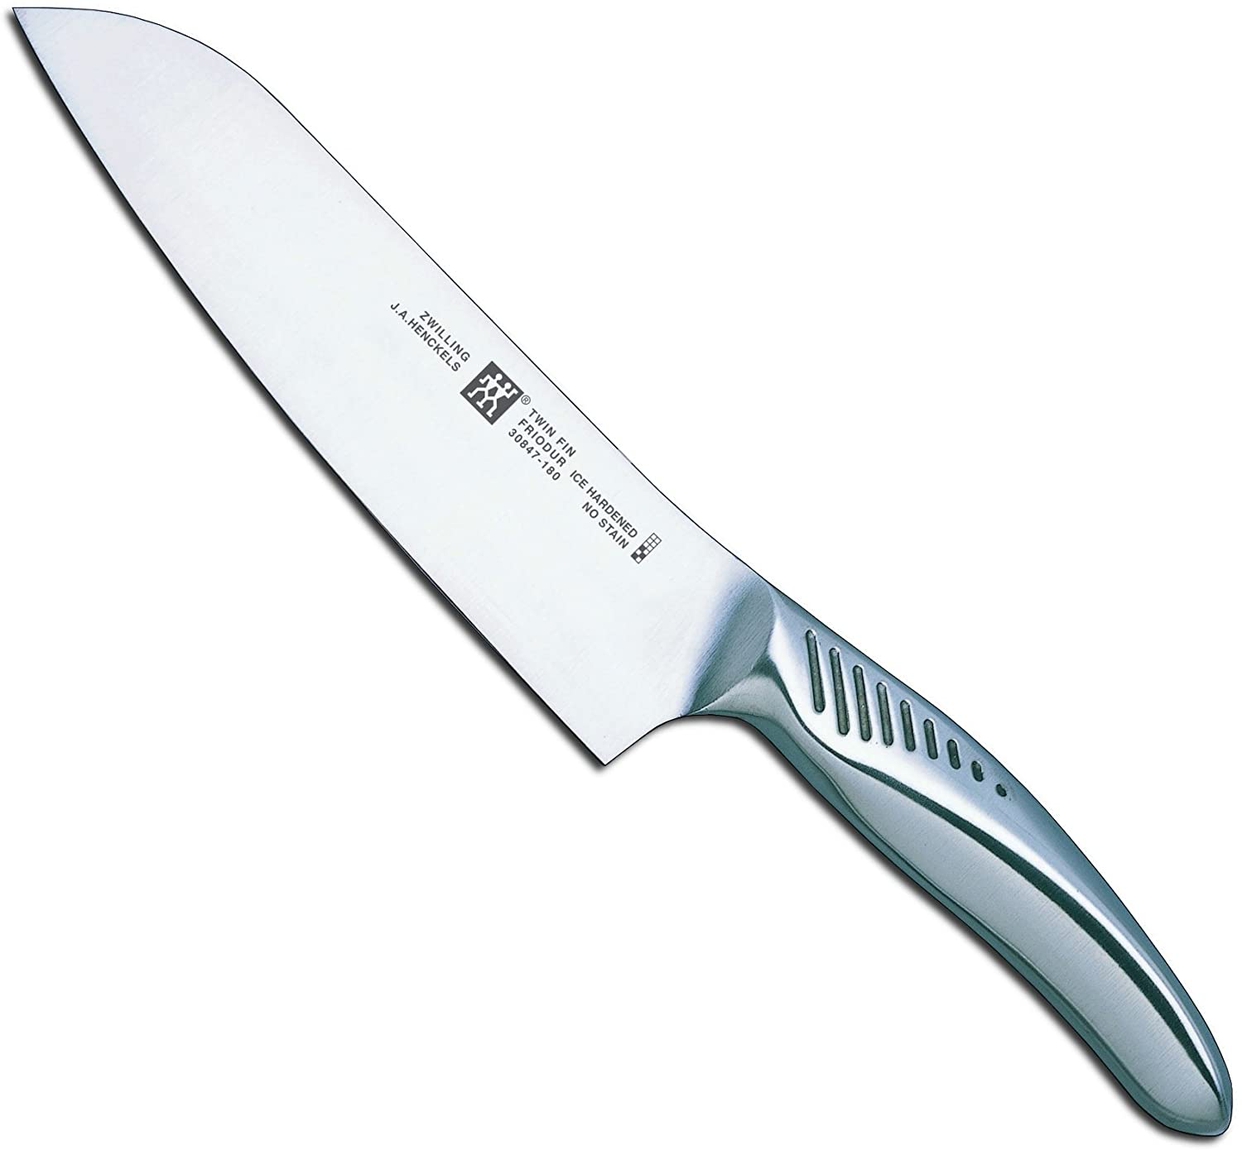 ZWILLING(ツヴィリング) マルチパーパスナイフ 30847-180-0の商品画像1 